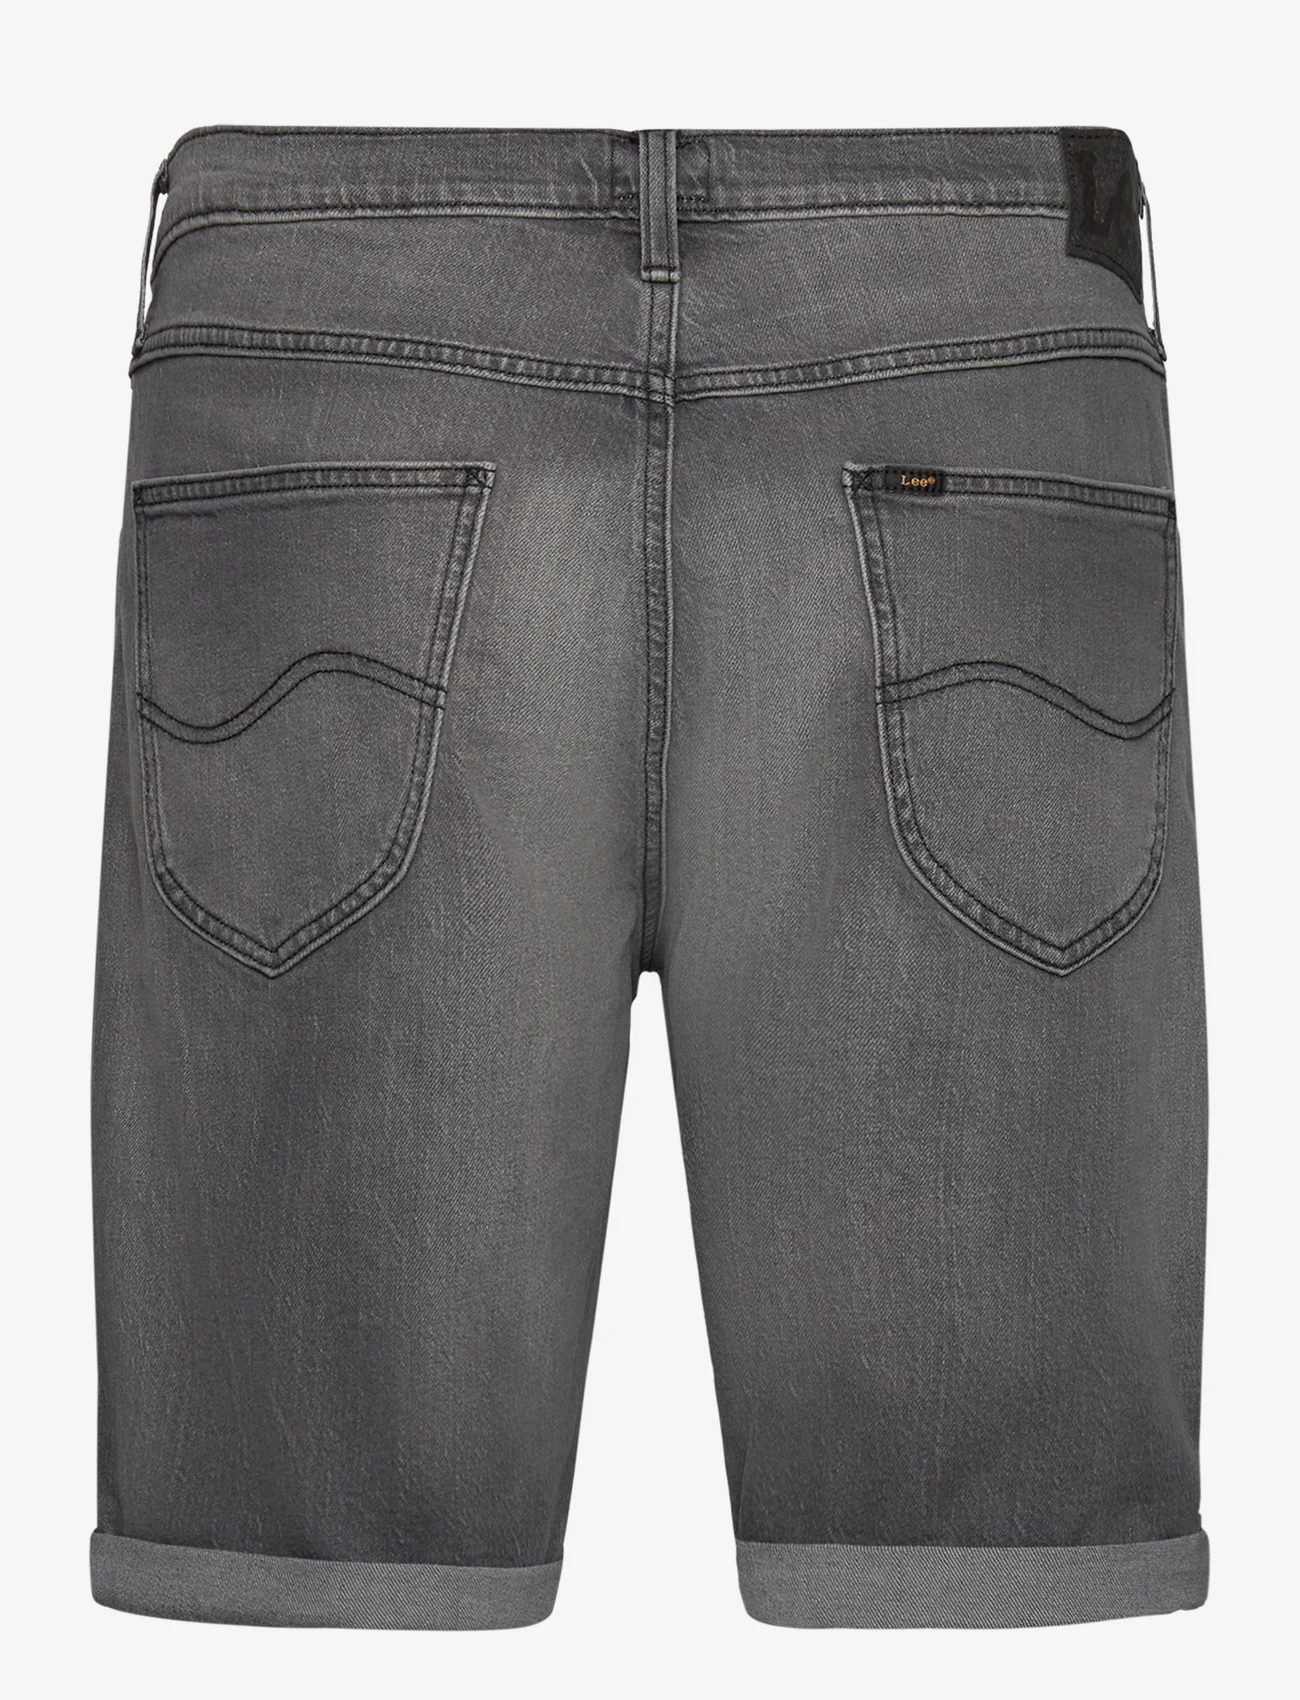 Lee Jeans - 5 POCKET SHORT - jeansshorts - washed grey - 1